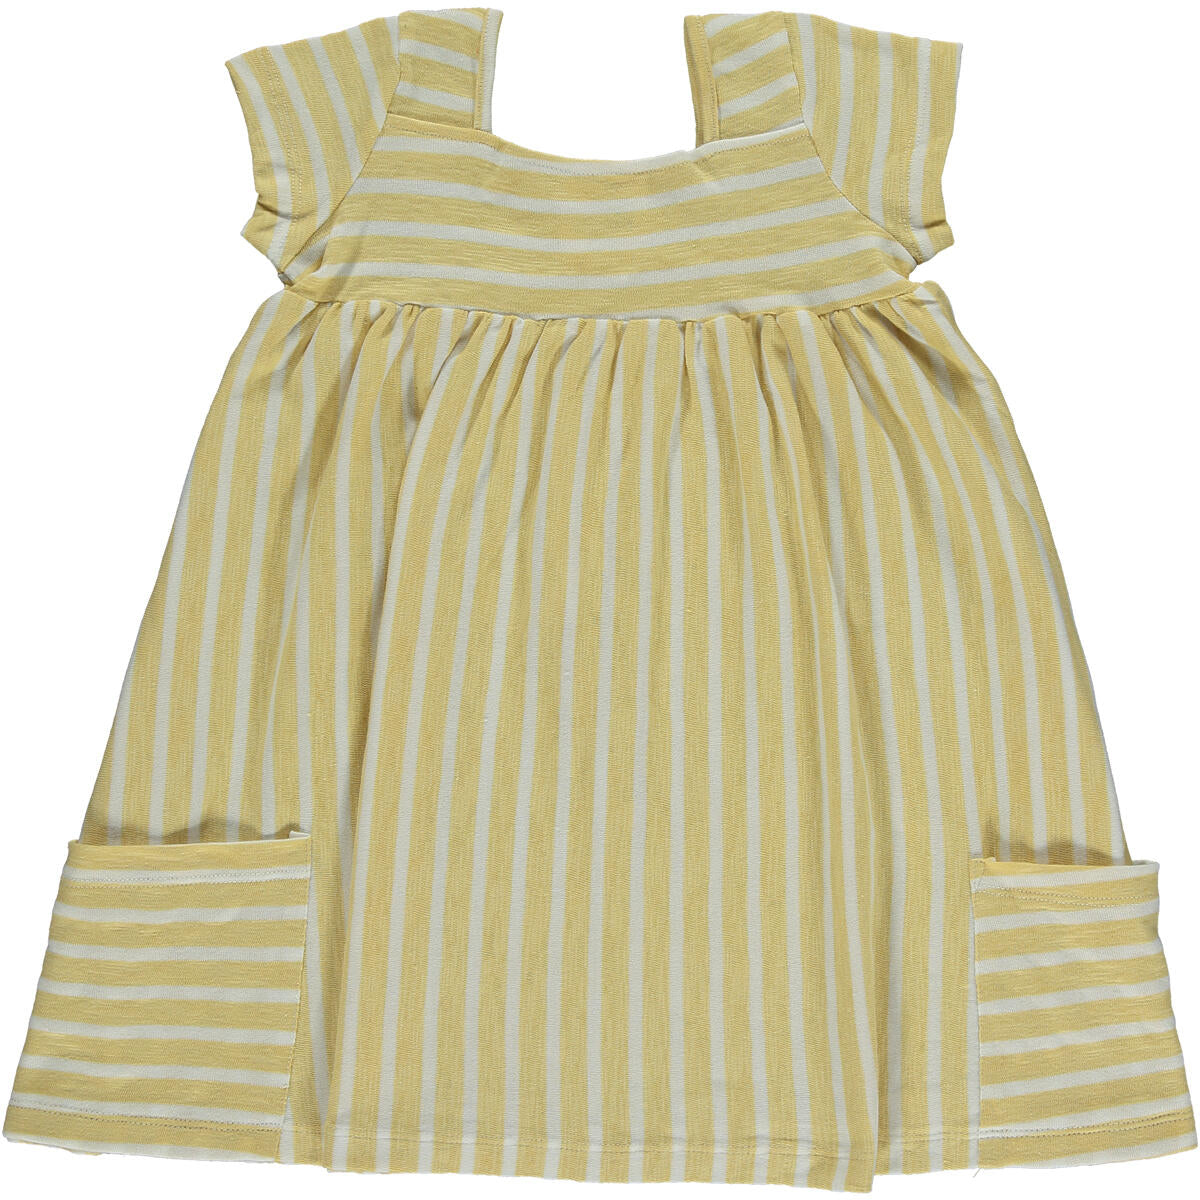 Vignette Yellow & Ivory Stripe Rylie Dress-VIGNETTE-Little Giant Kidz